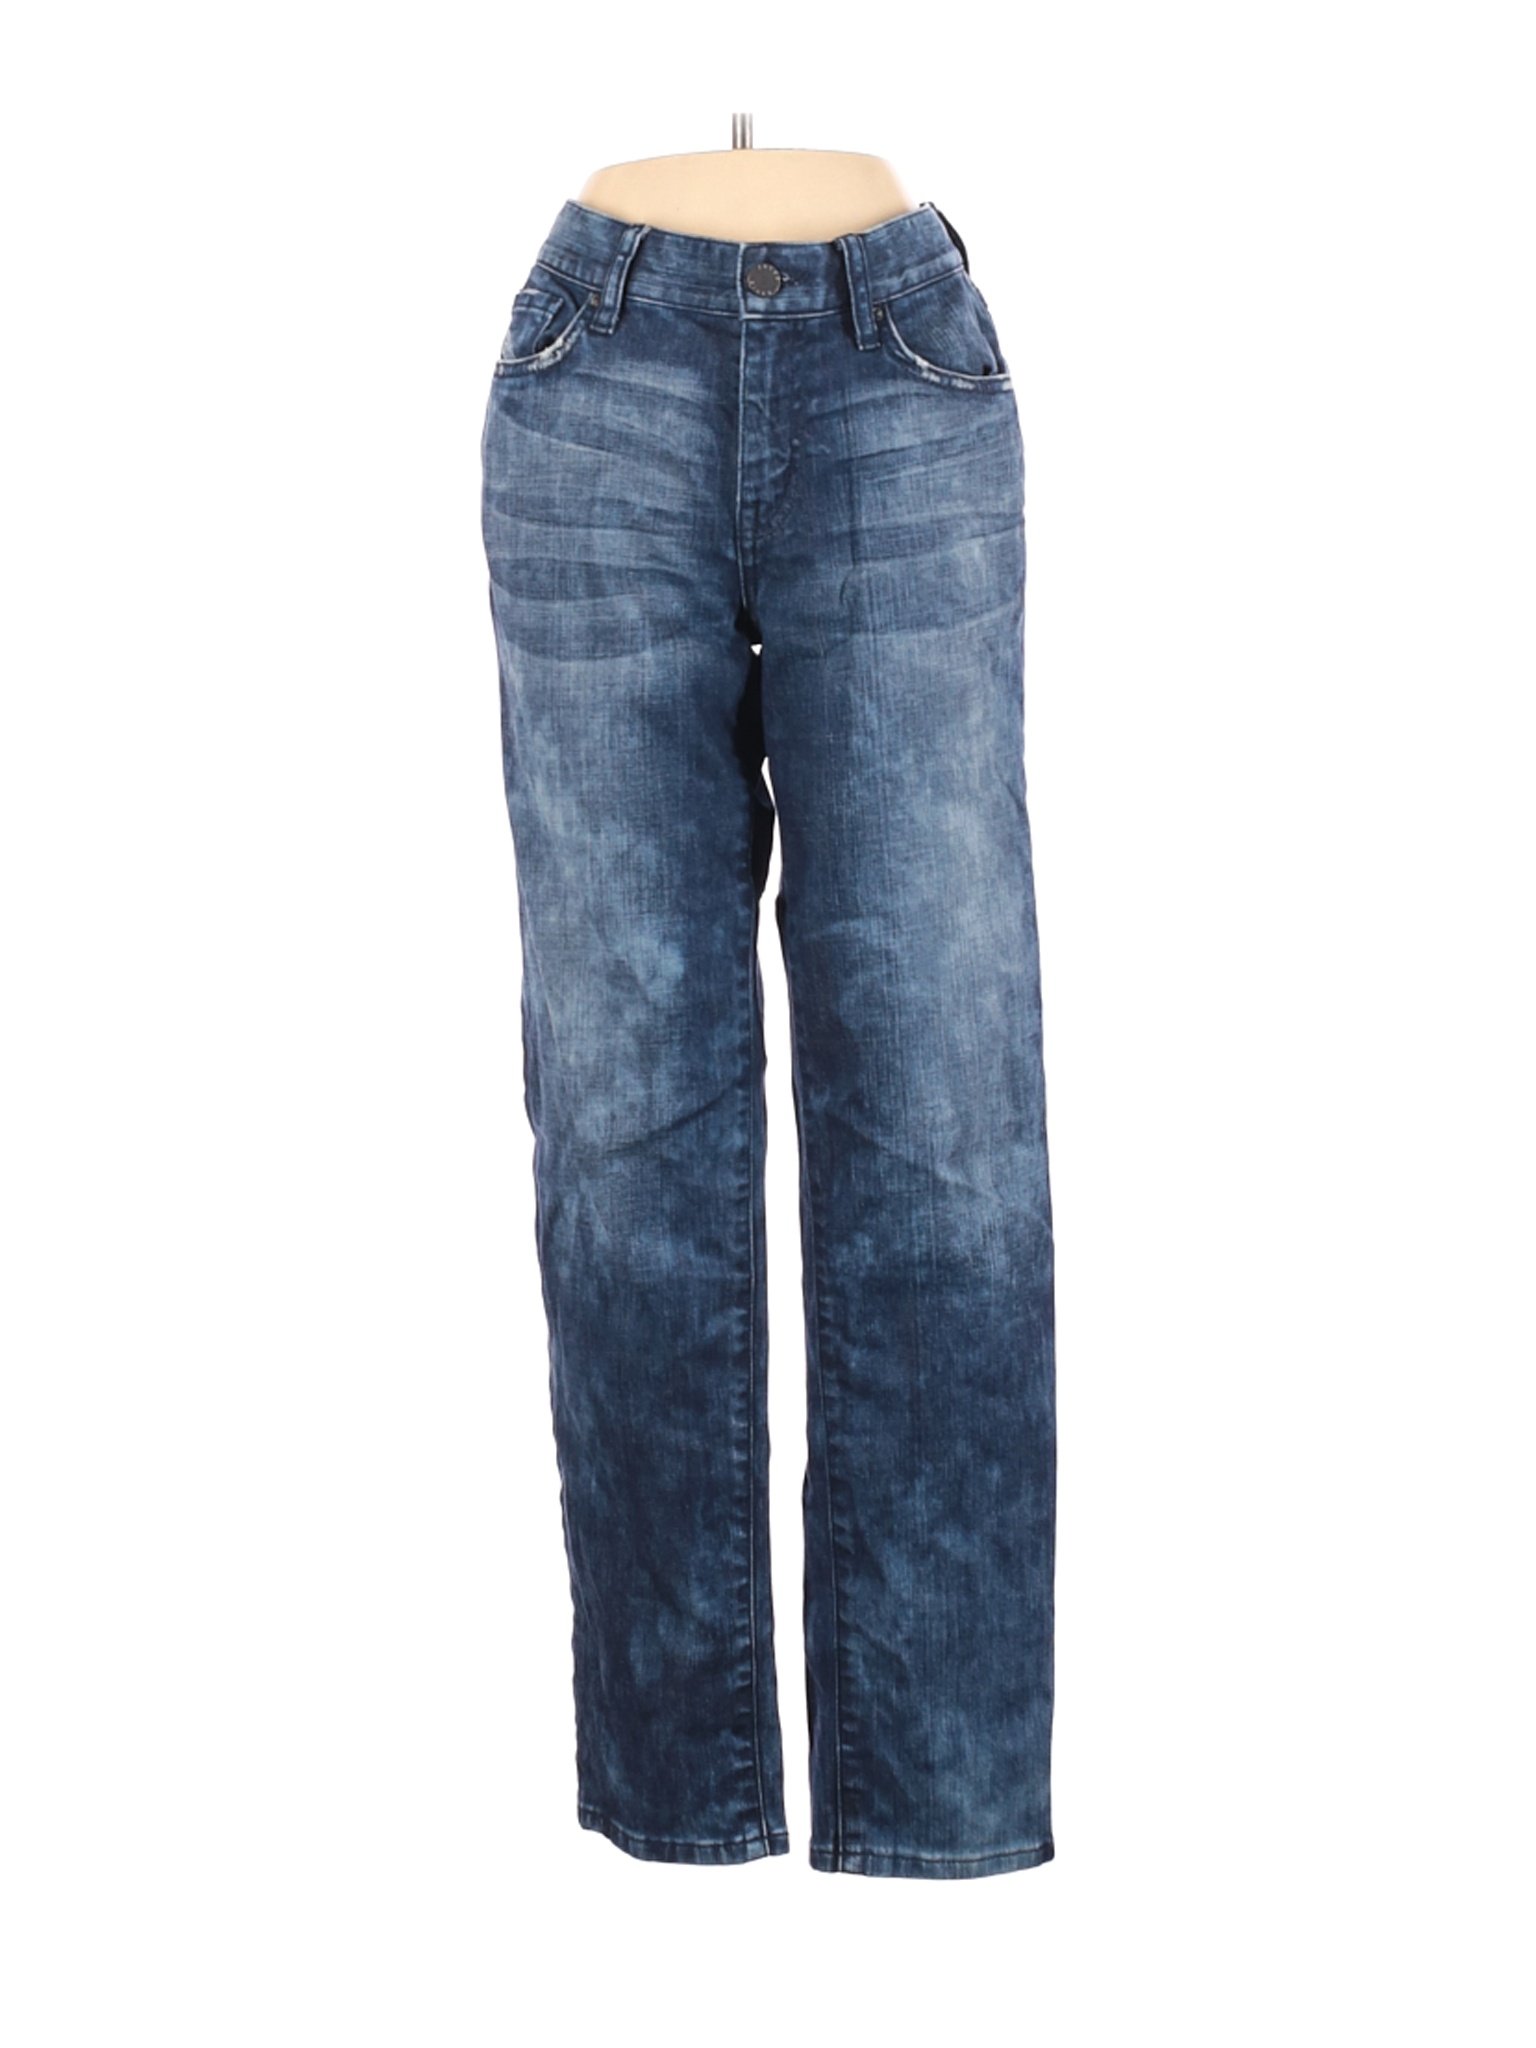 Jacob Davis Women Blue Jeans 26W | eBay